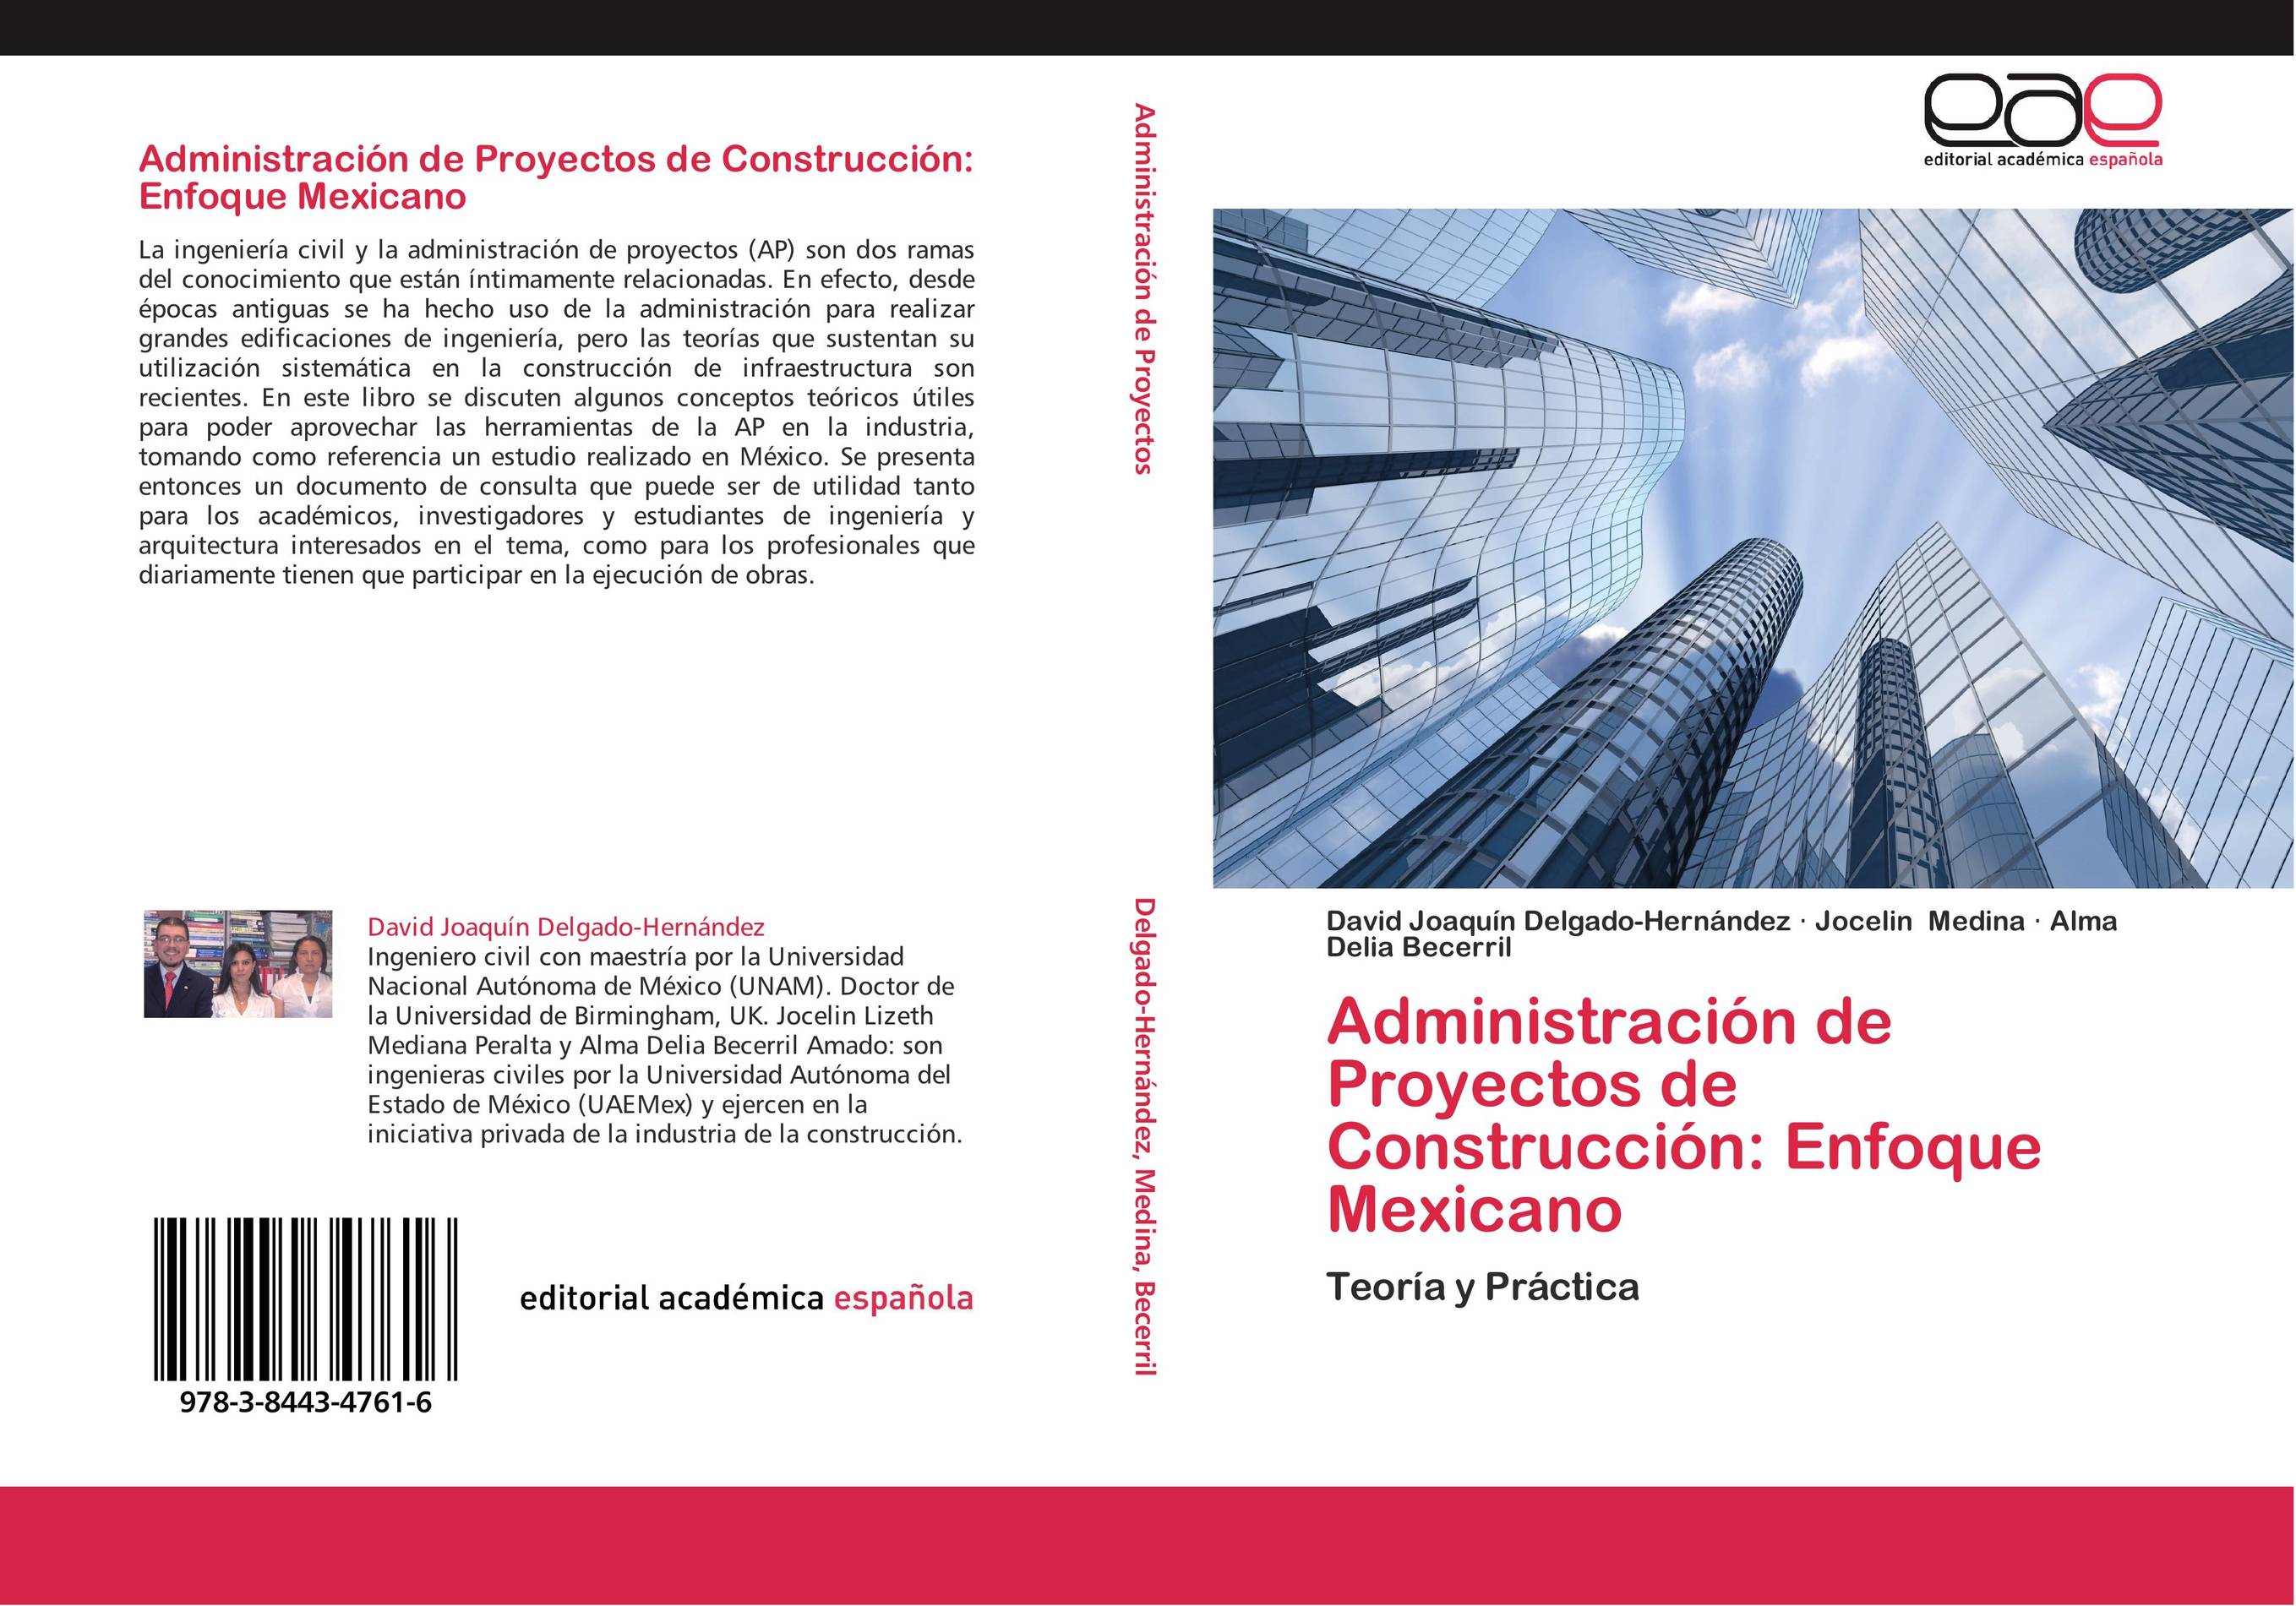 Administración de Proyectos de Construcción: Enfoque Mexicano